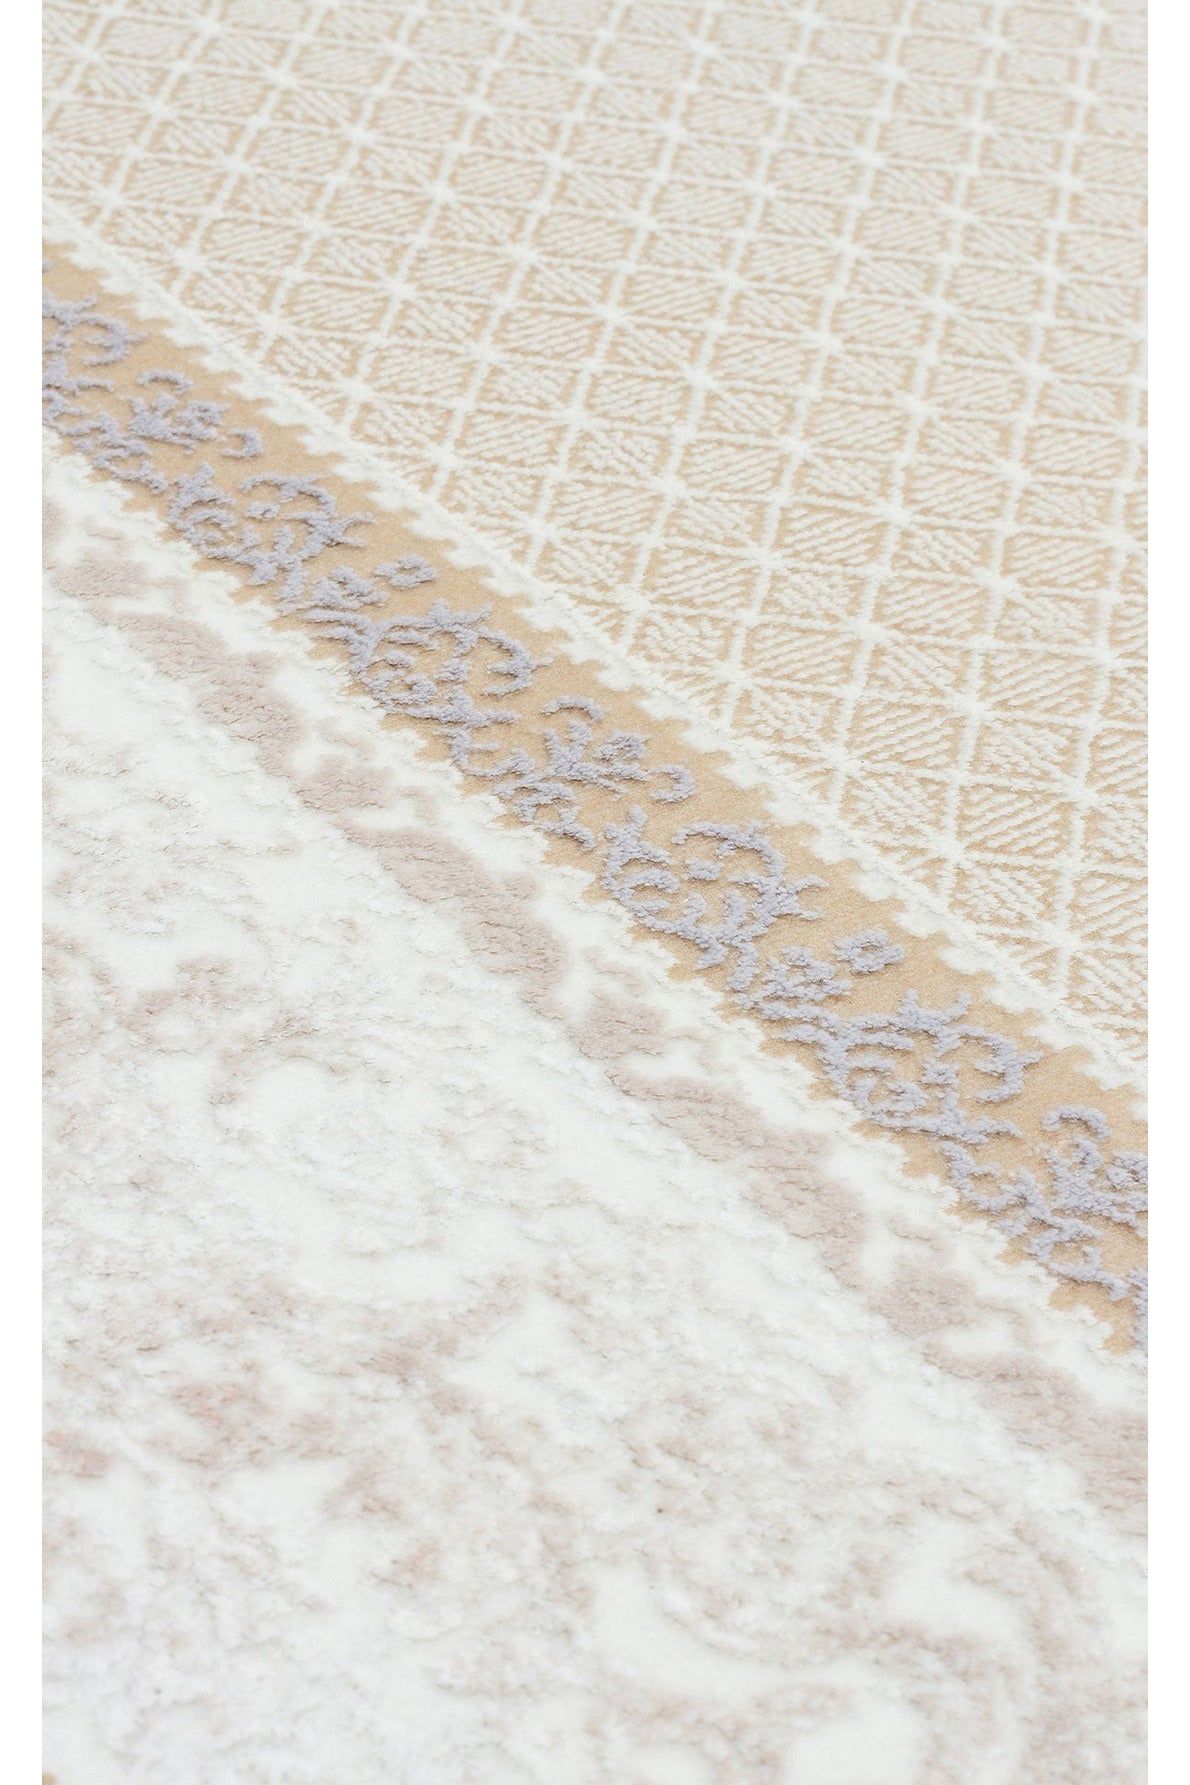 #Turkish_Carpets_Rugs# #Modern_Carpets# #Abrash_Carpets#Blv 02 Beige